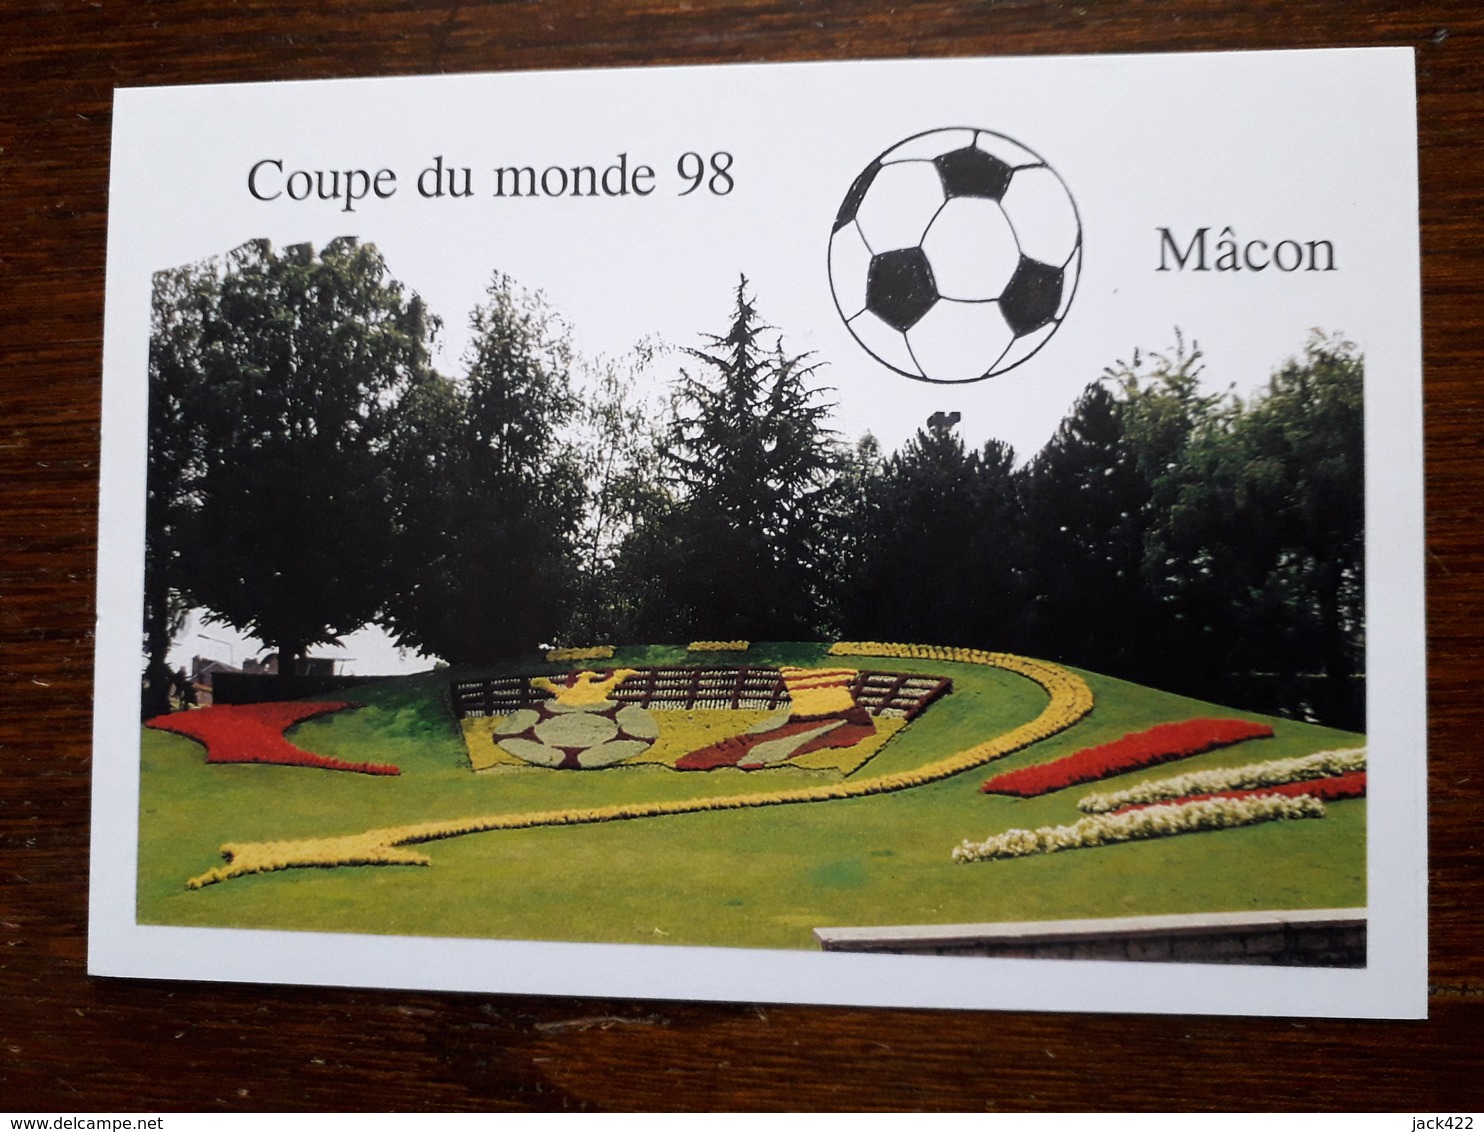 Macon.La Coupe Du Monde De Foot à Macon.Décoration Florale Réalisée En Gare De Macon.Tirage Limité à150 Ex.Ex N 14 - Macon